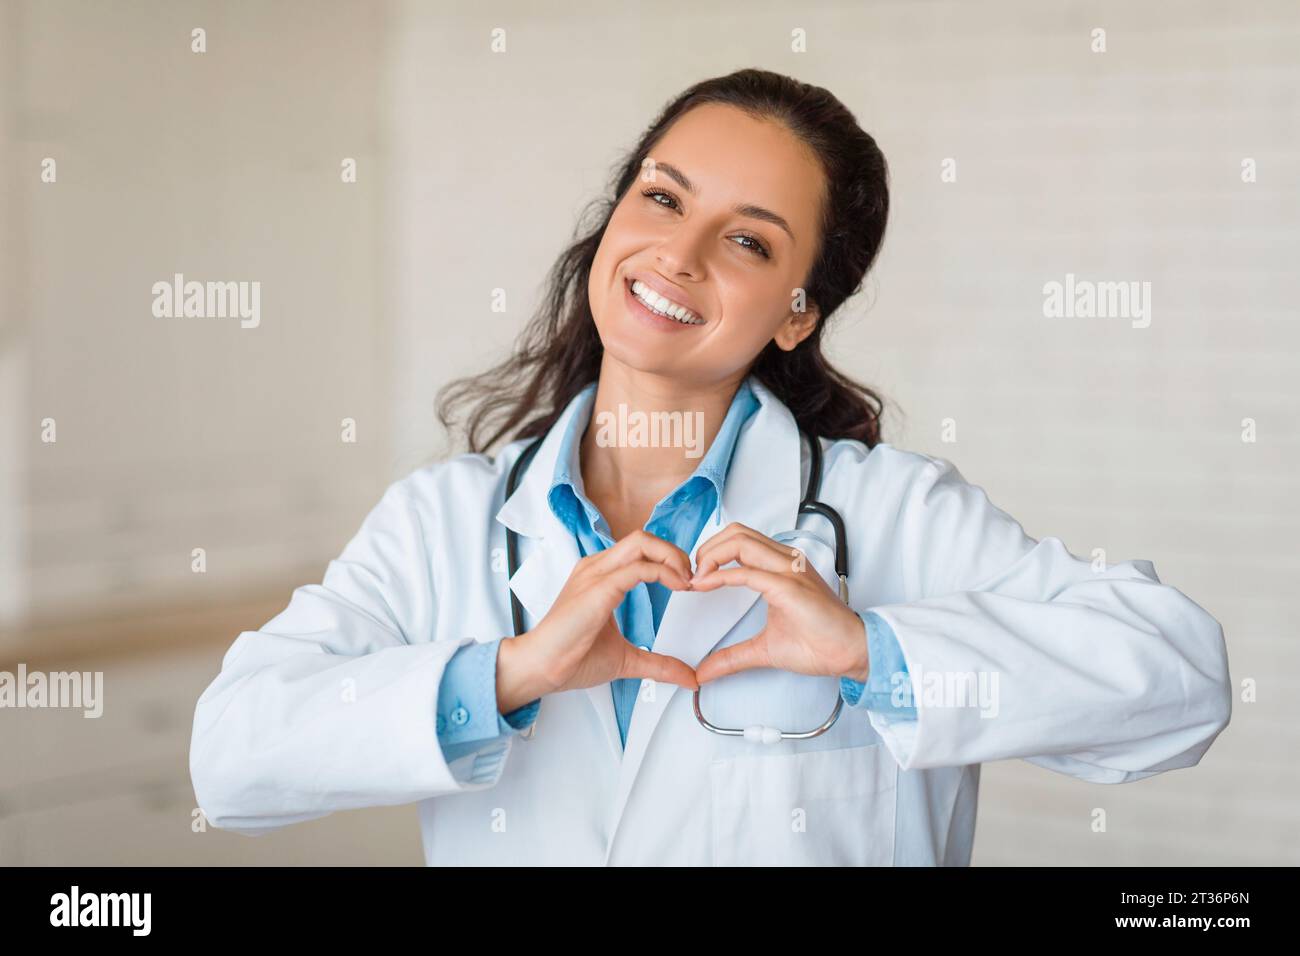 Medico allegro che crea forma a cuore con le mani, sorridendo alla macchina fotografica Foto Stock